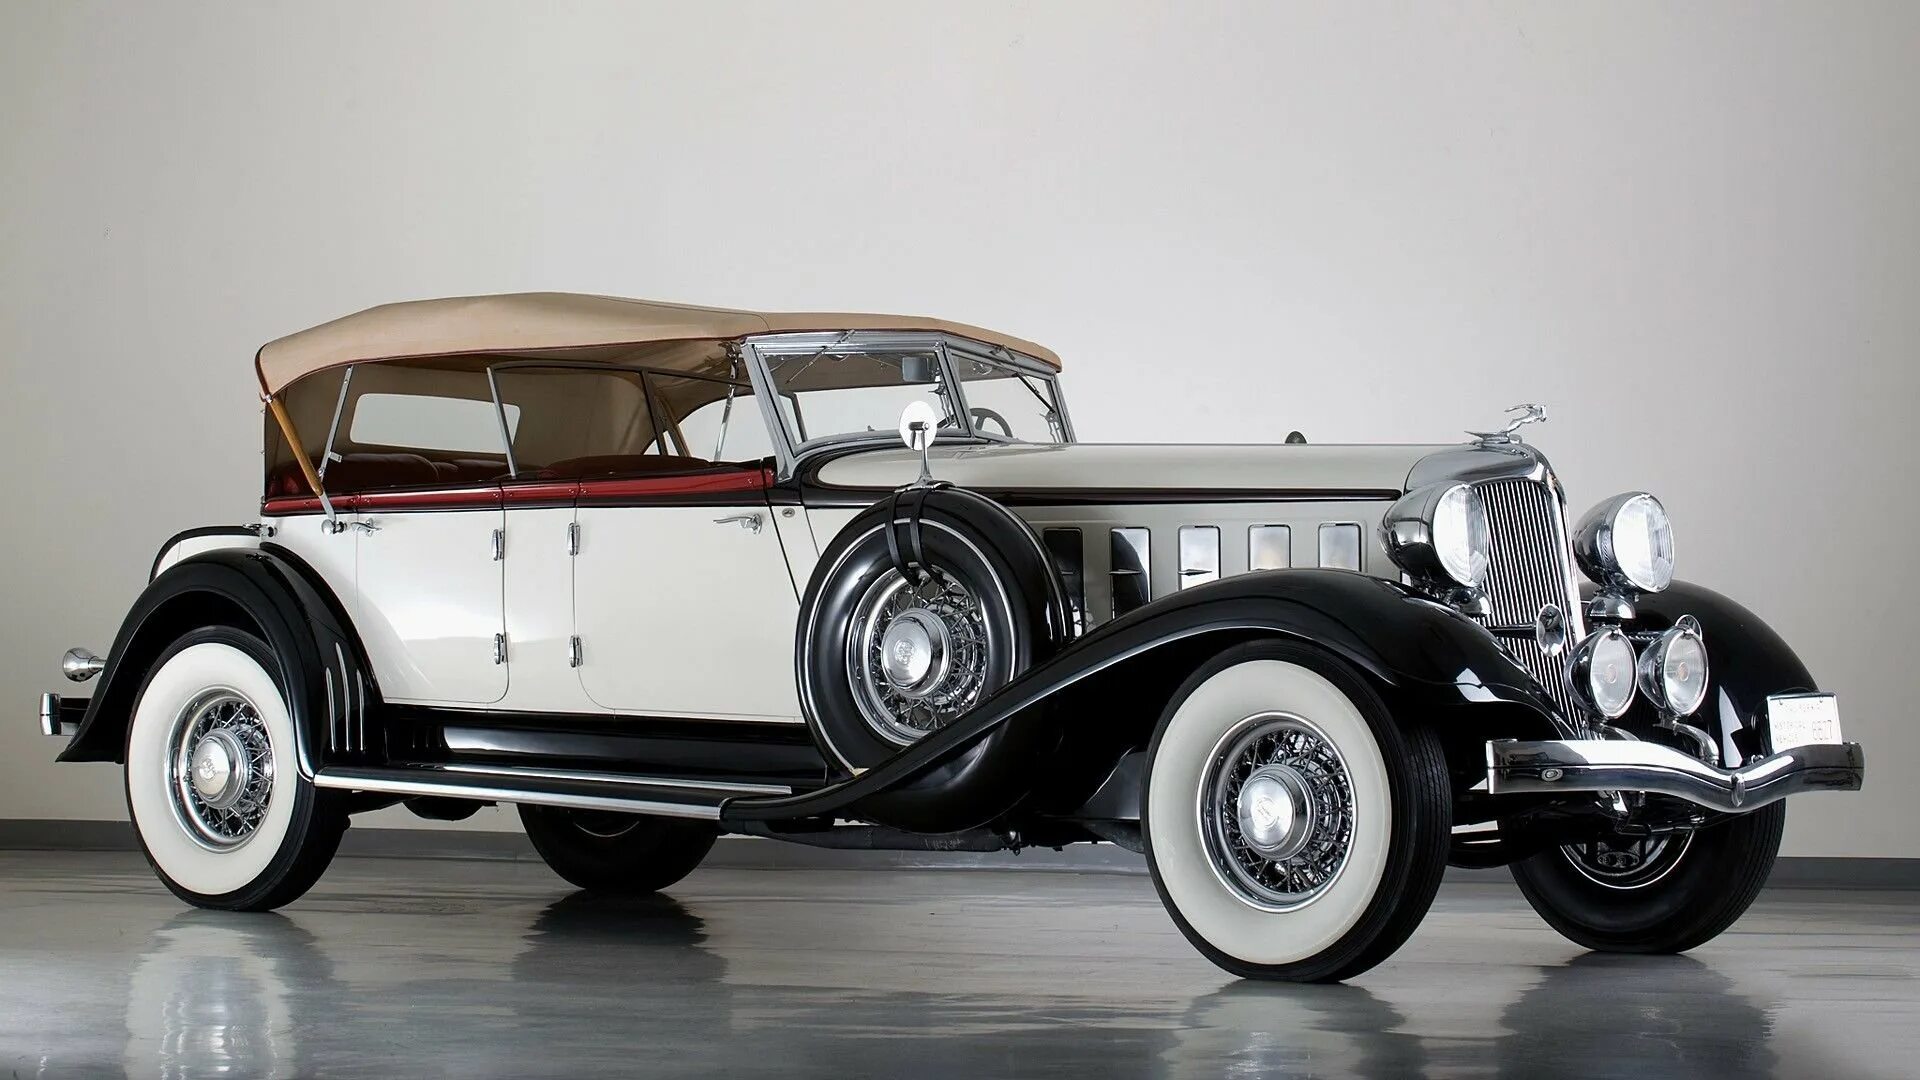 Зикерт автомобиль. Роллс Ройс 1920. Chrysler Imperial 1933. Chrysler CL Imperial 1933. Chrysler Imperial Phaeton.